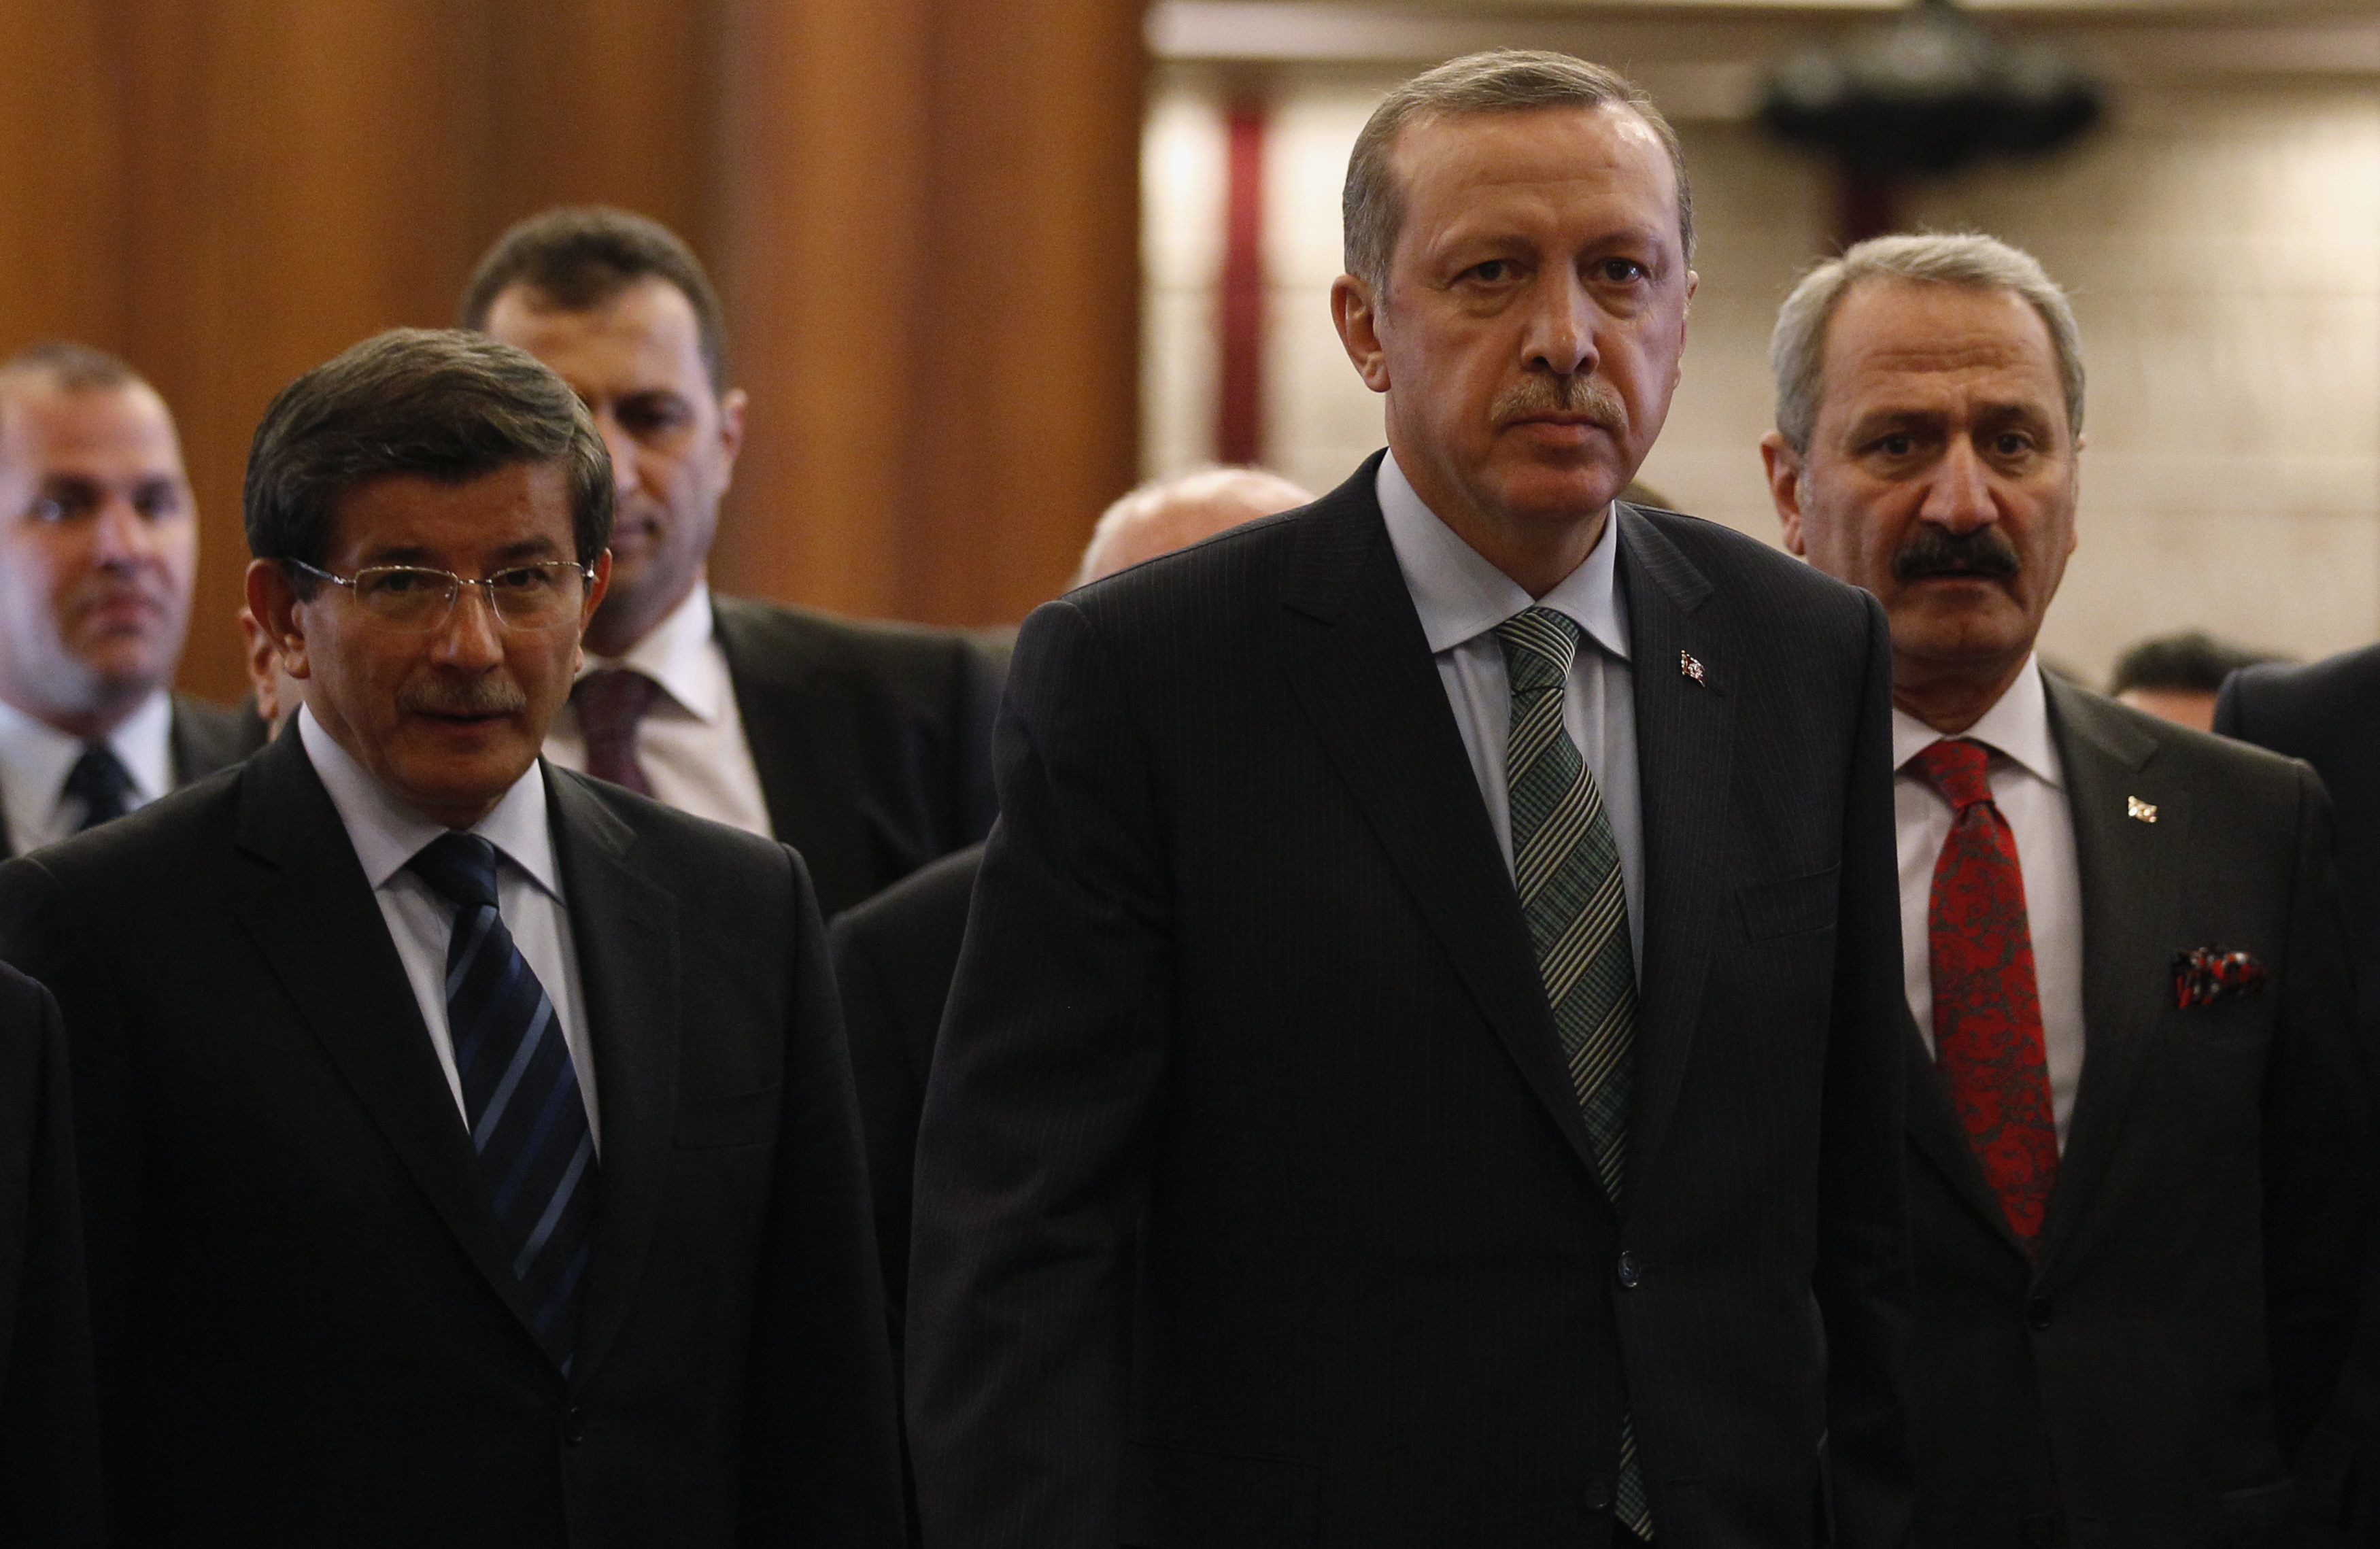 “Έβγαλε γλώσσα” στον Ερντογάν ο αντιπρόεδρός του: “Σου δίνουν λάθος πληροφορίες”